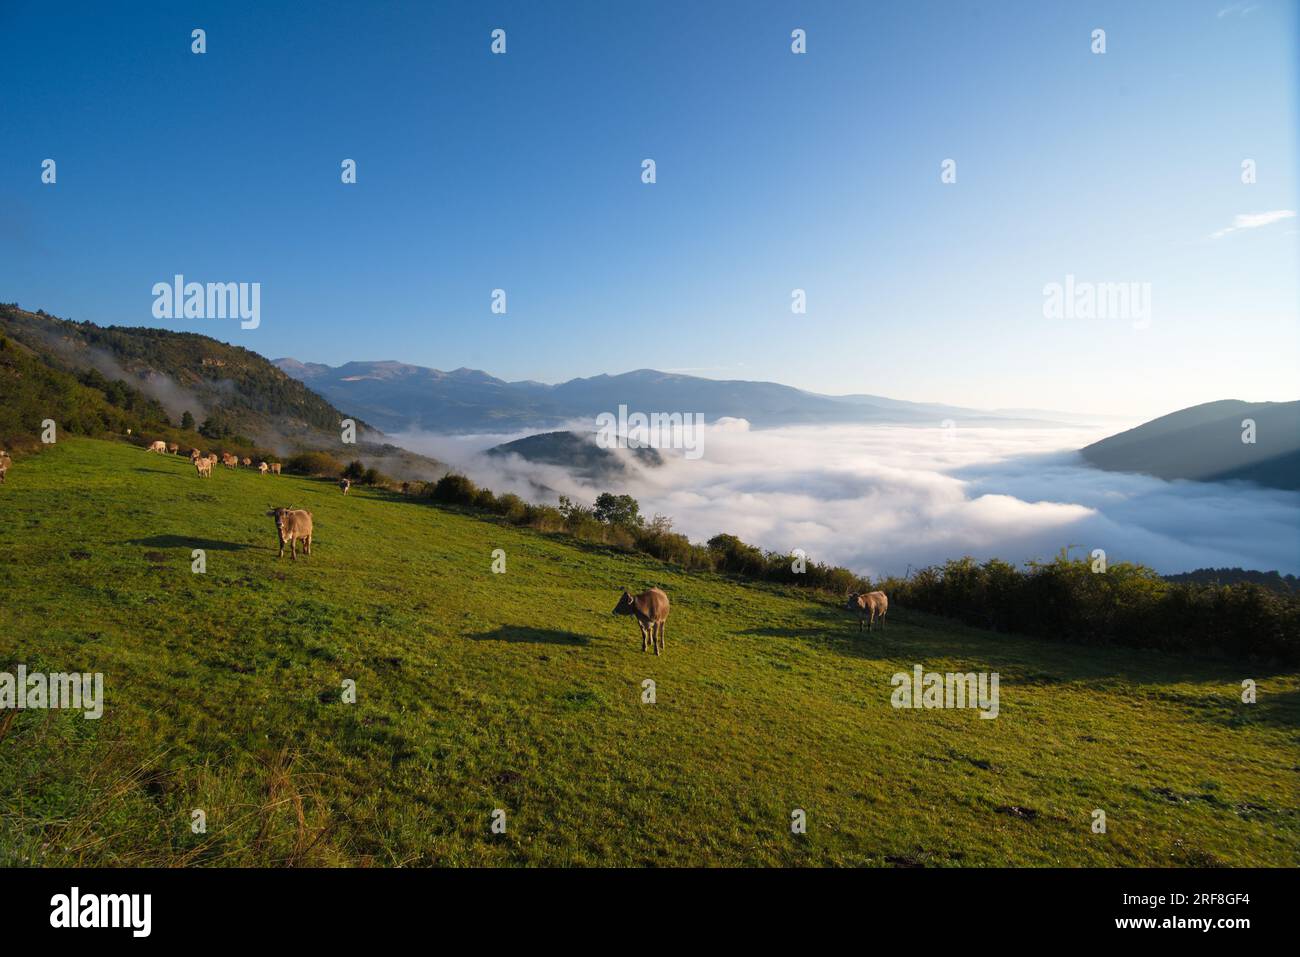 A mountain meadow with grazing cows and a sea of clouds below. Un prado de montaña con vacas pastando y por debajo se ve un mar de nubes. Stock Photo